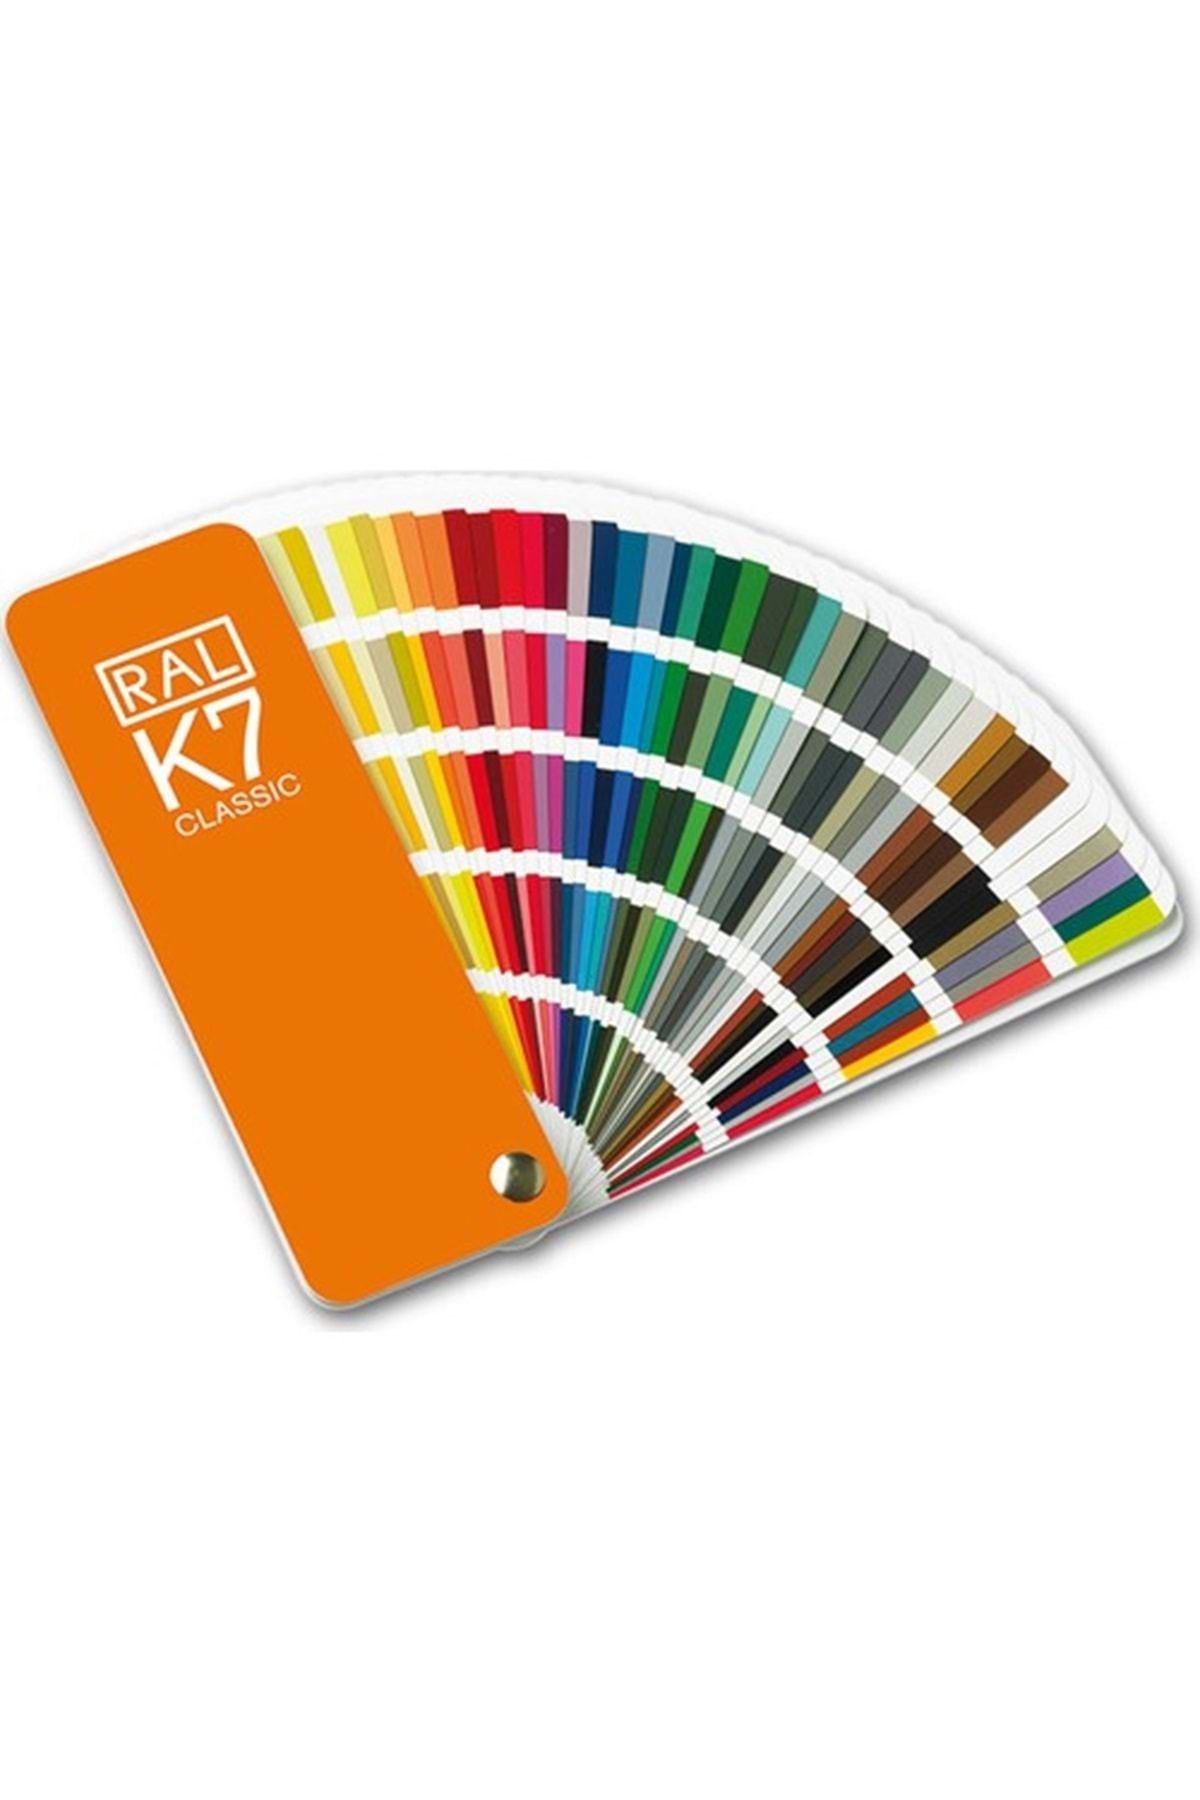 Ral K7 Klasik Renk Kartelası 213 Renk